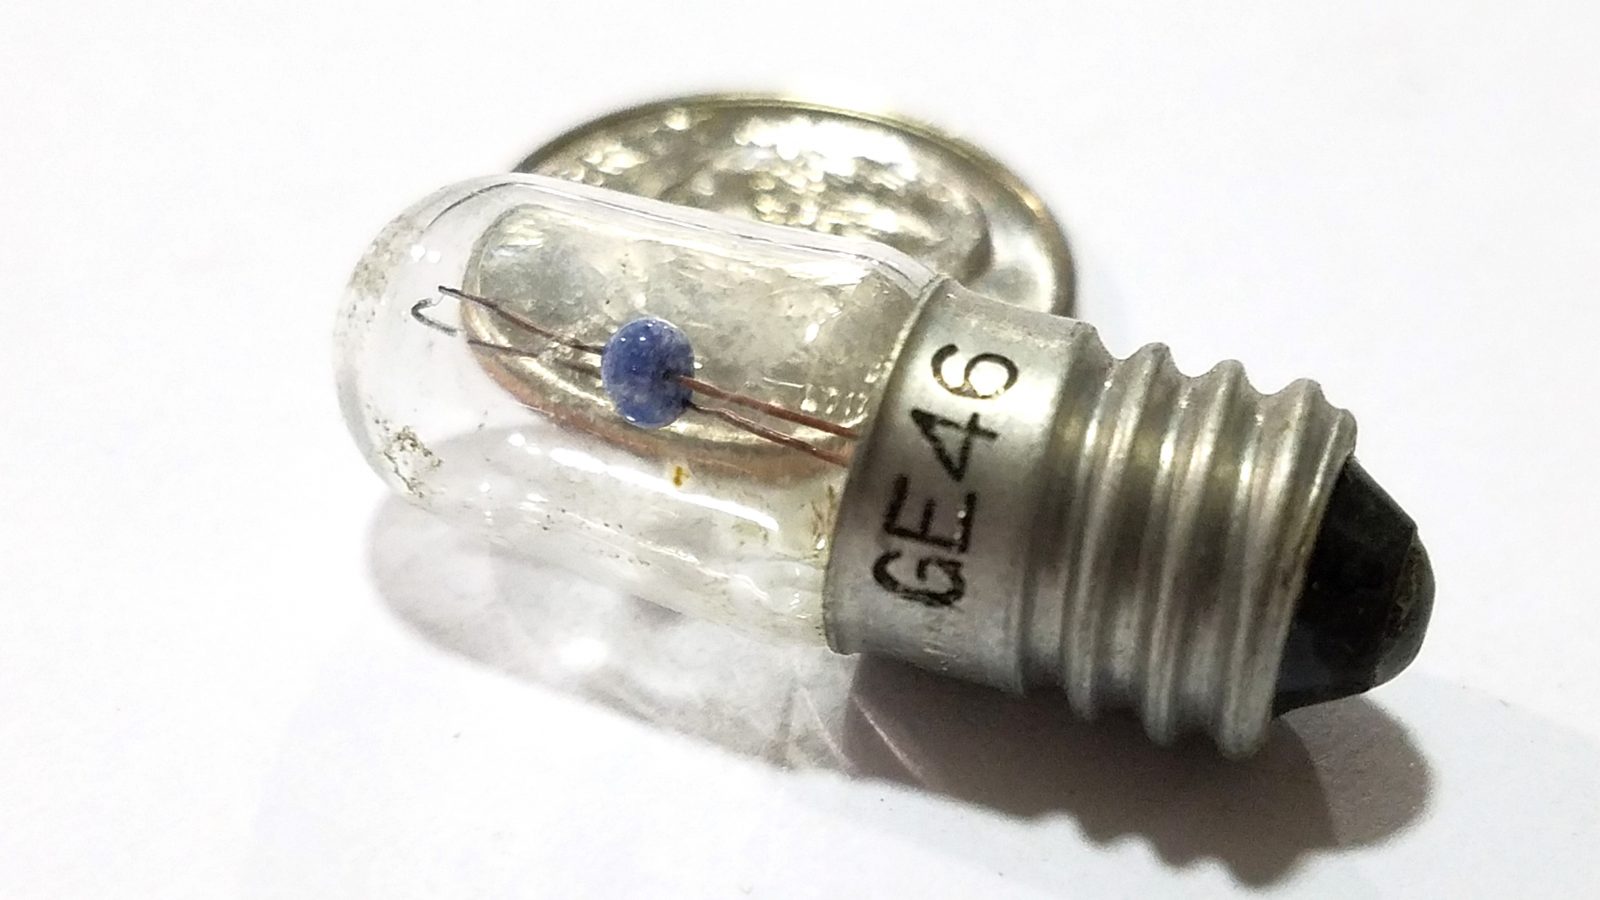 General Electric GE46 6.3V, 0.25A Incadescent Bulb